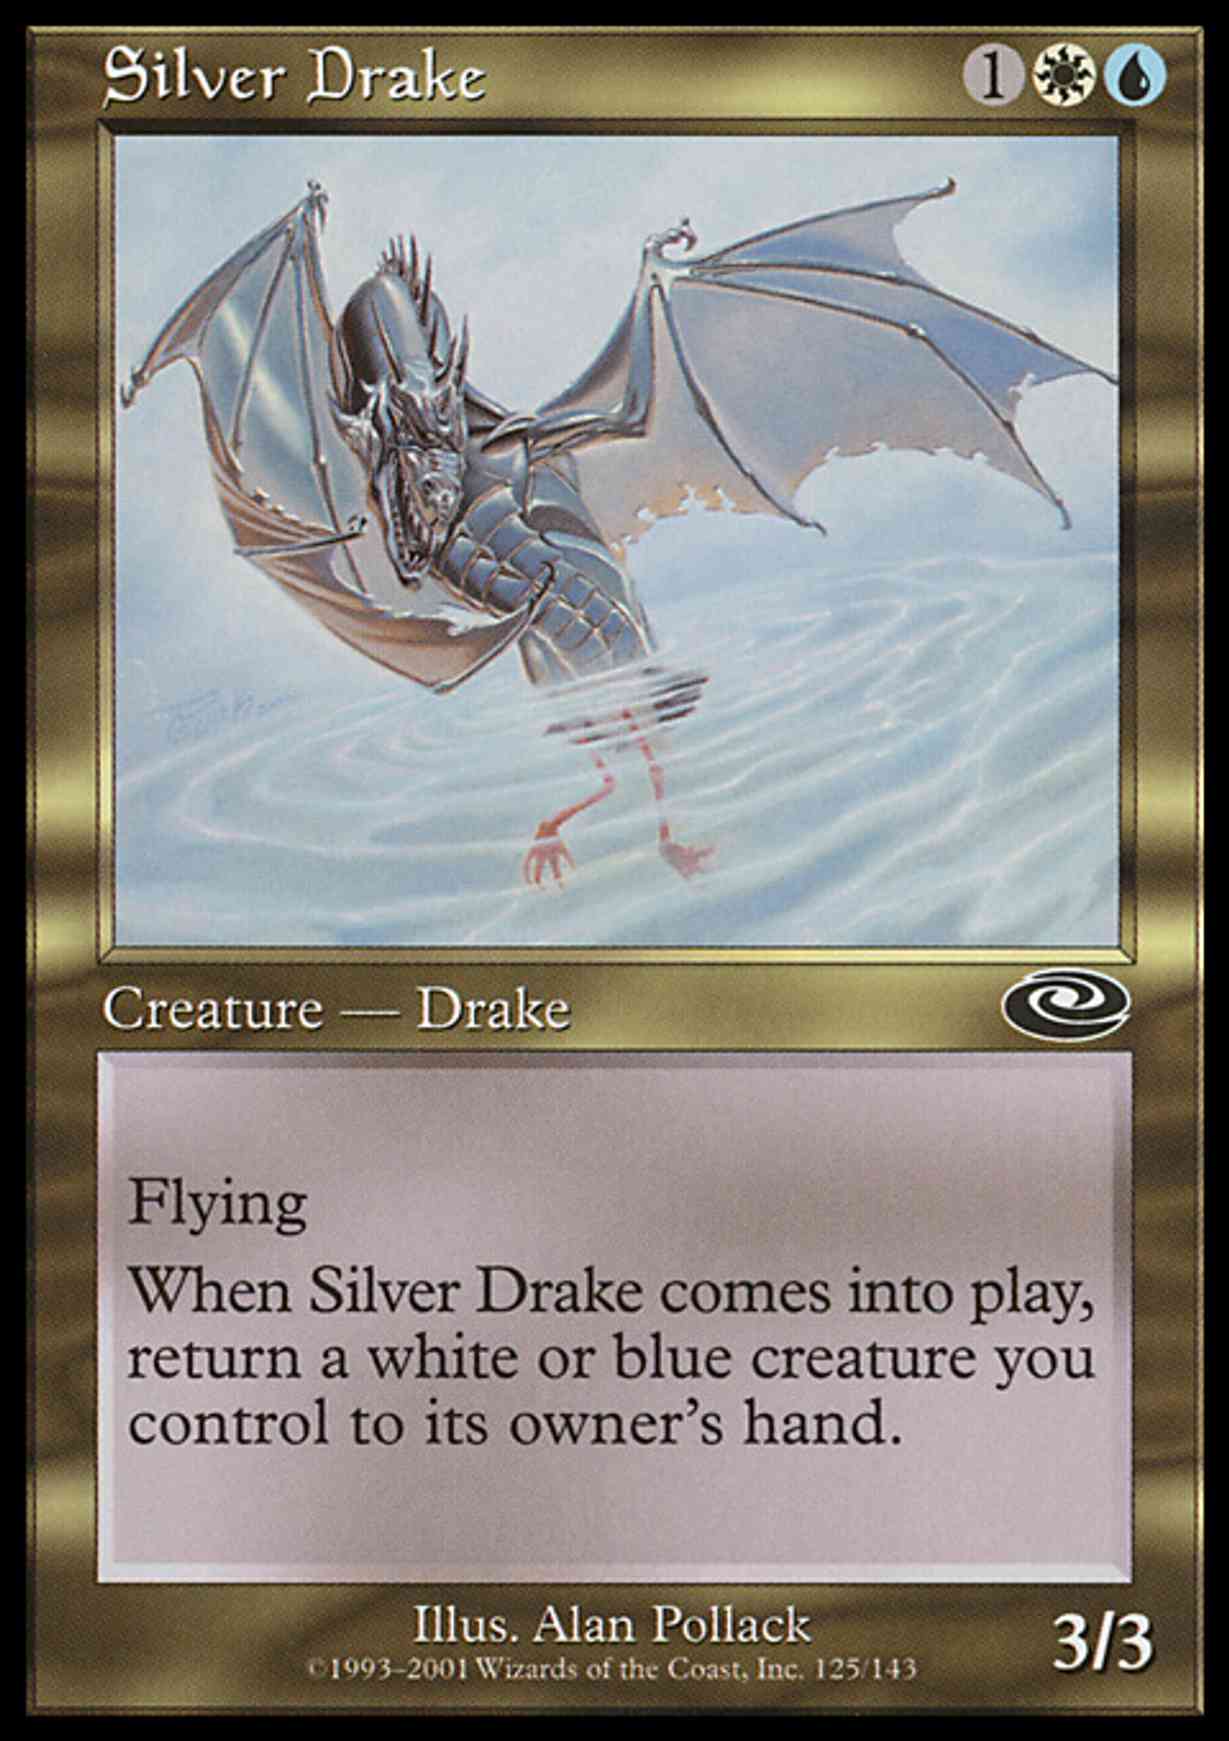 Silver Drake magic card front